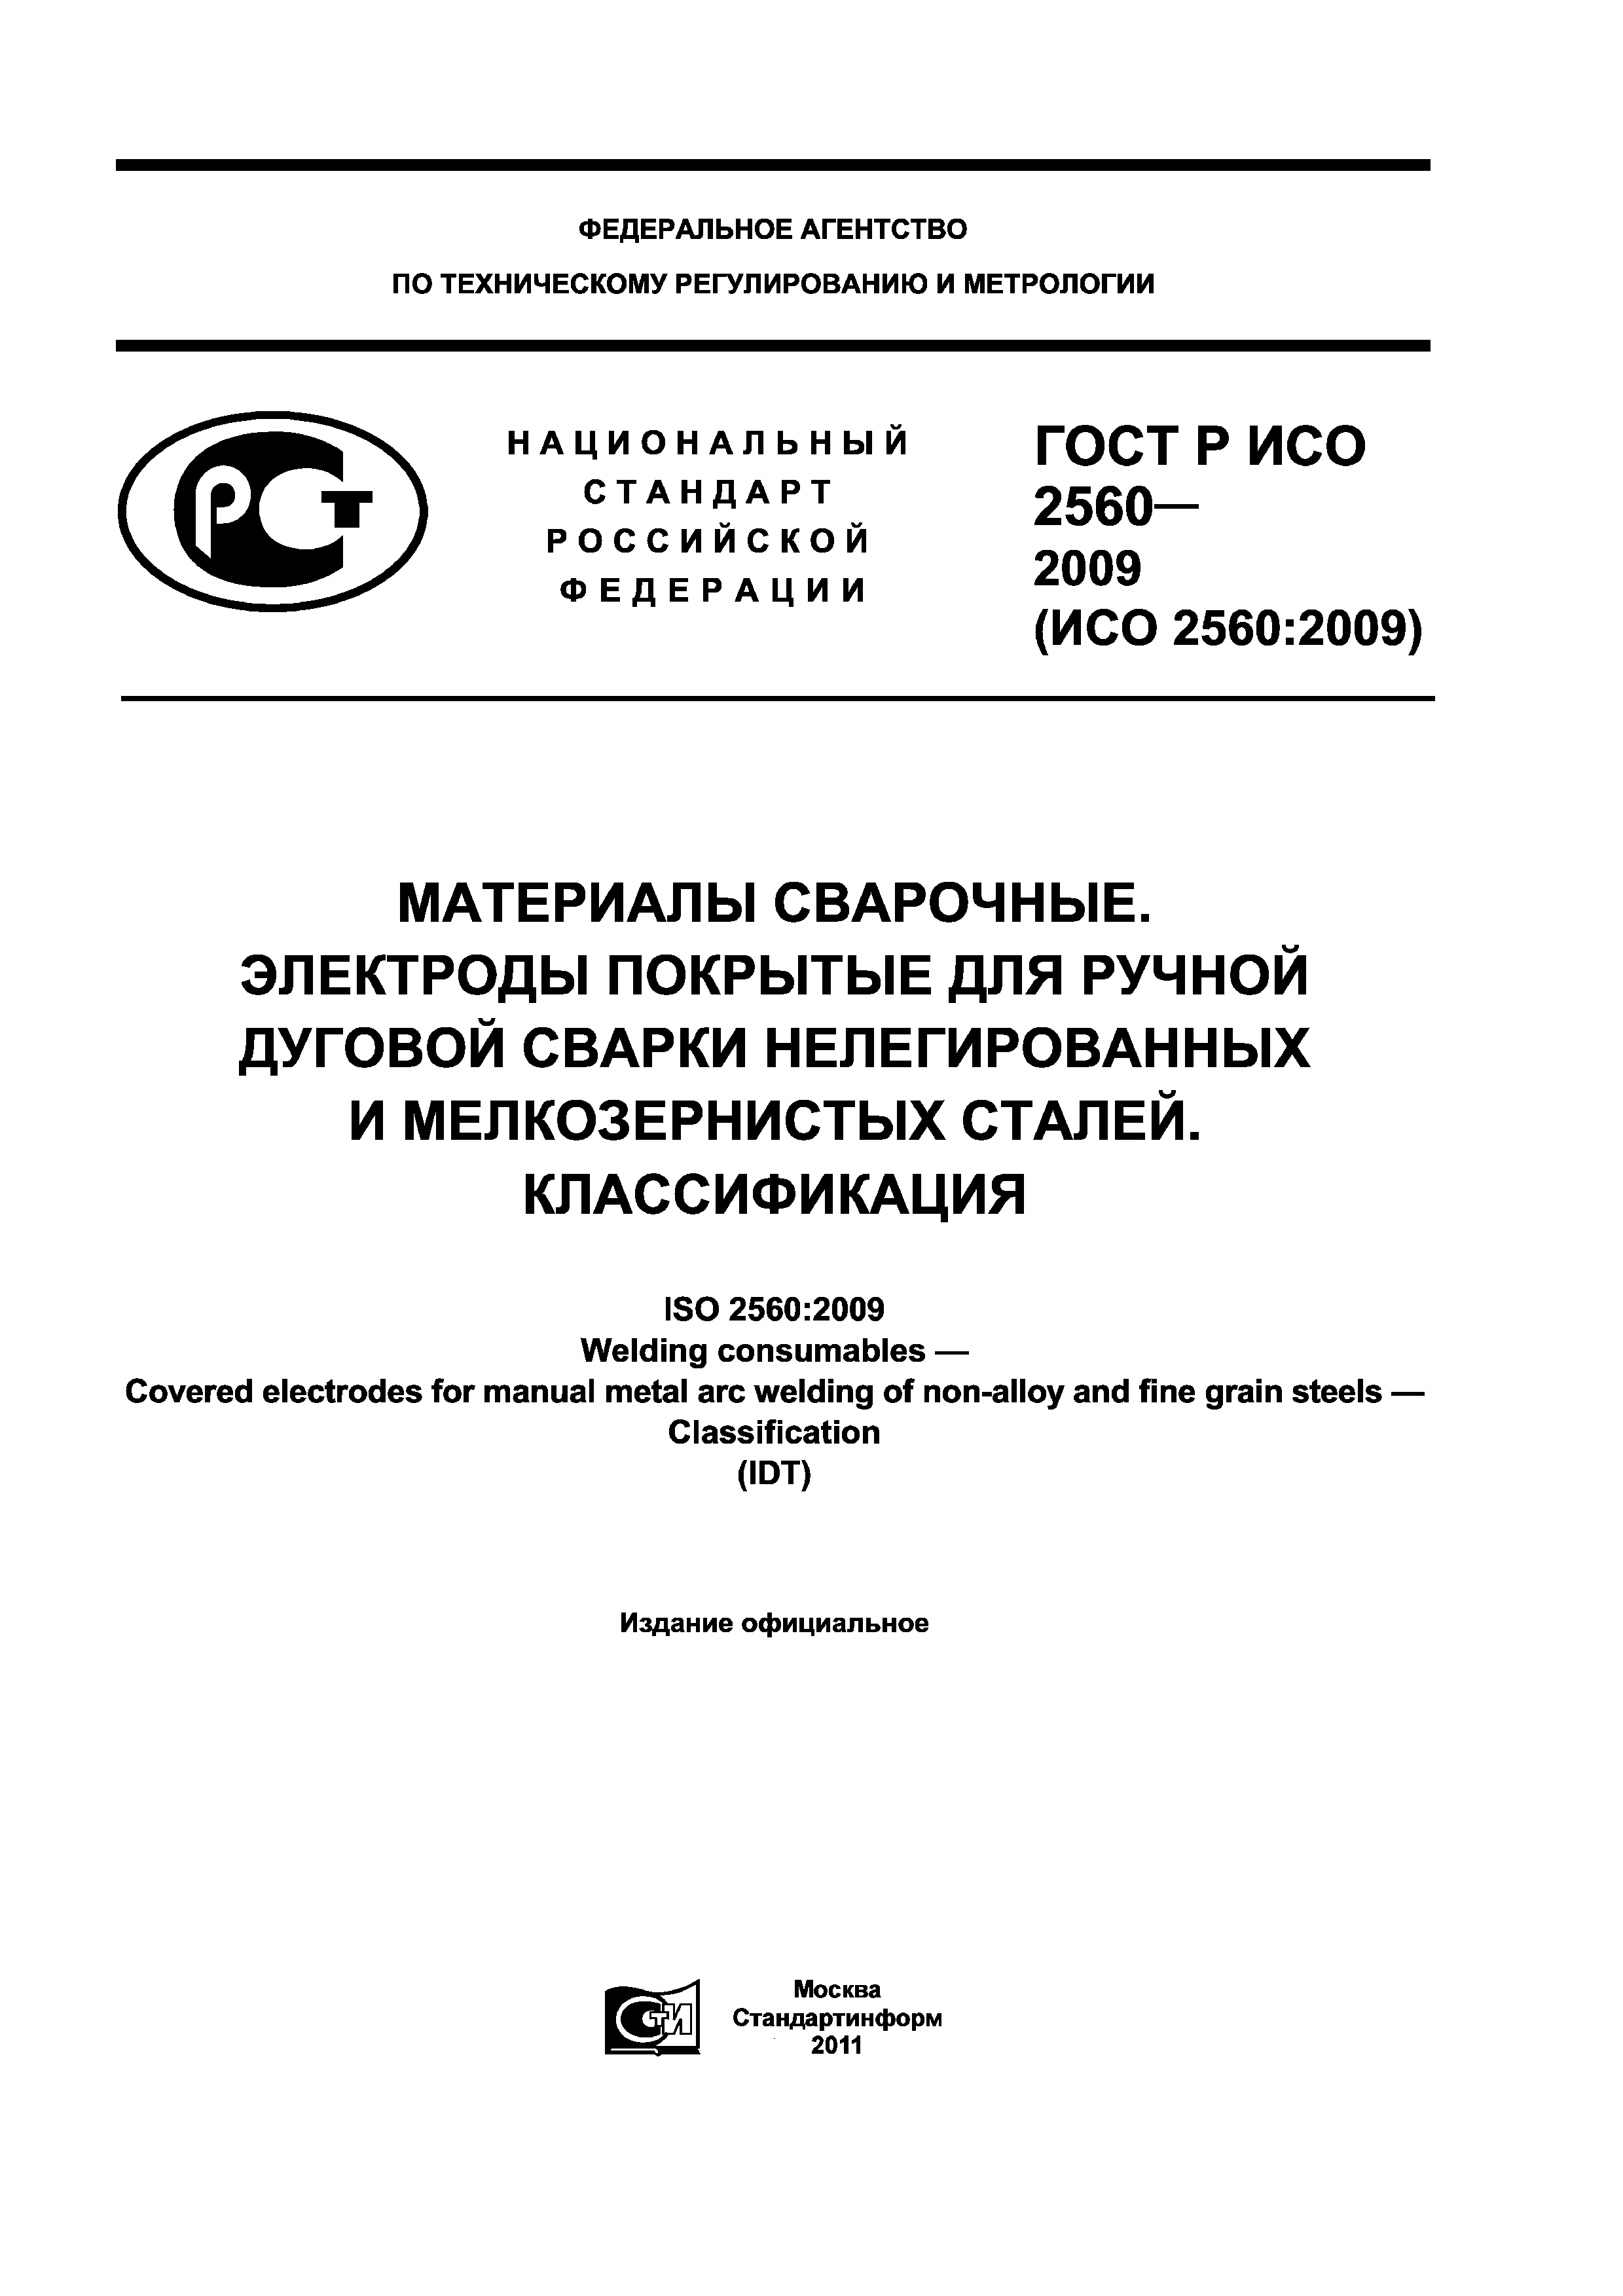 ГОСТ Р ИСО 2560-2009